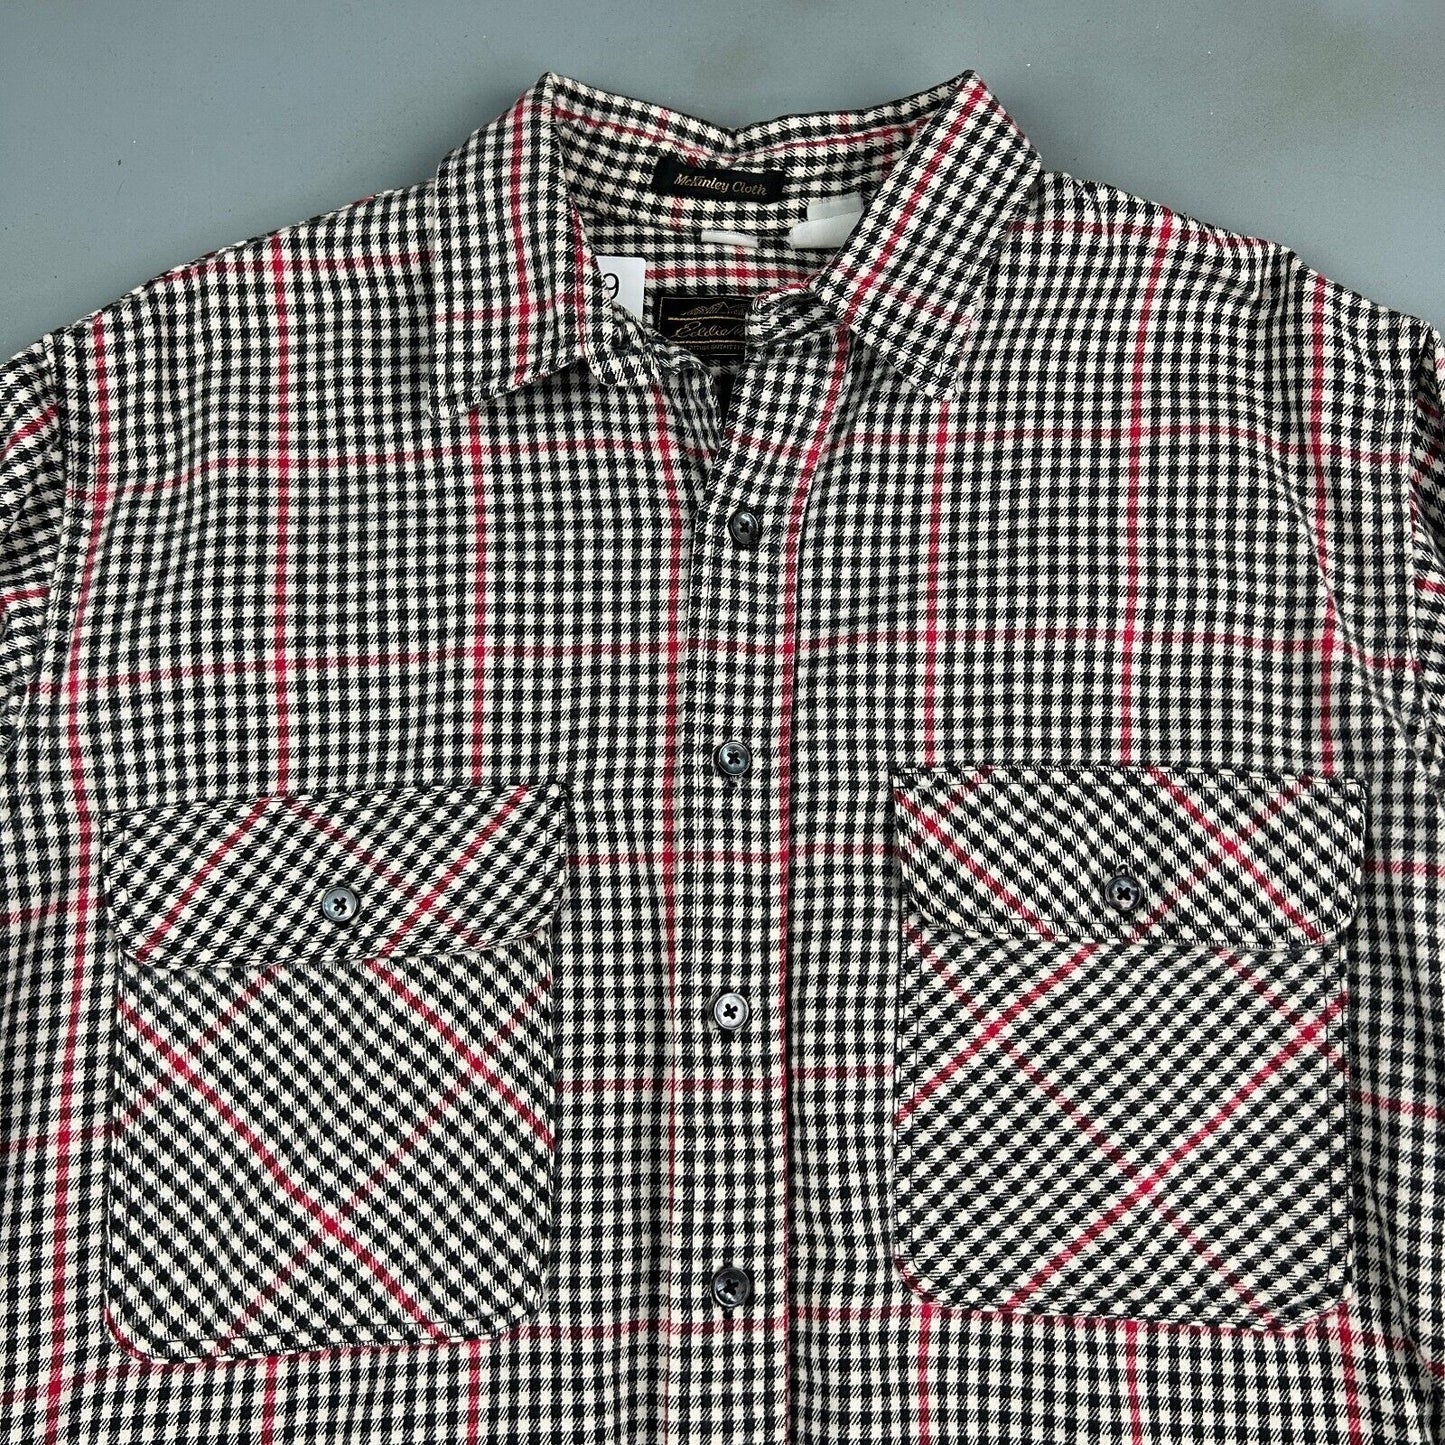 VINTAGE 90s Eddie Bauer Mckinley Cloth Button Up Shirt sz Medium Adult